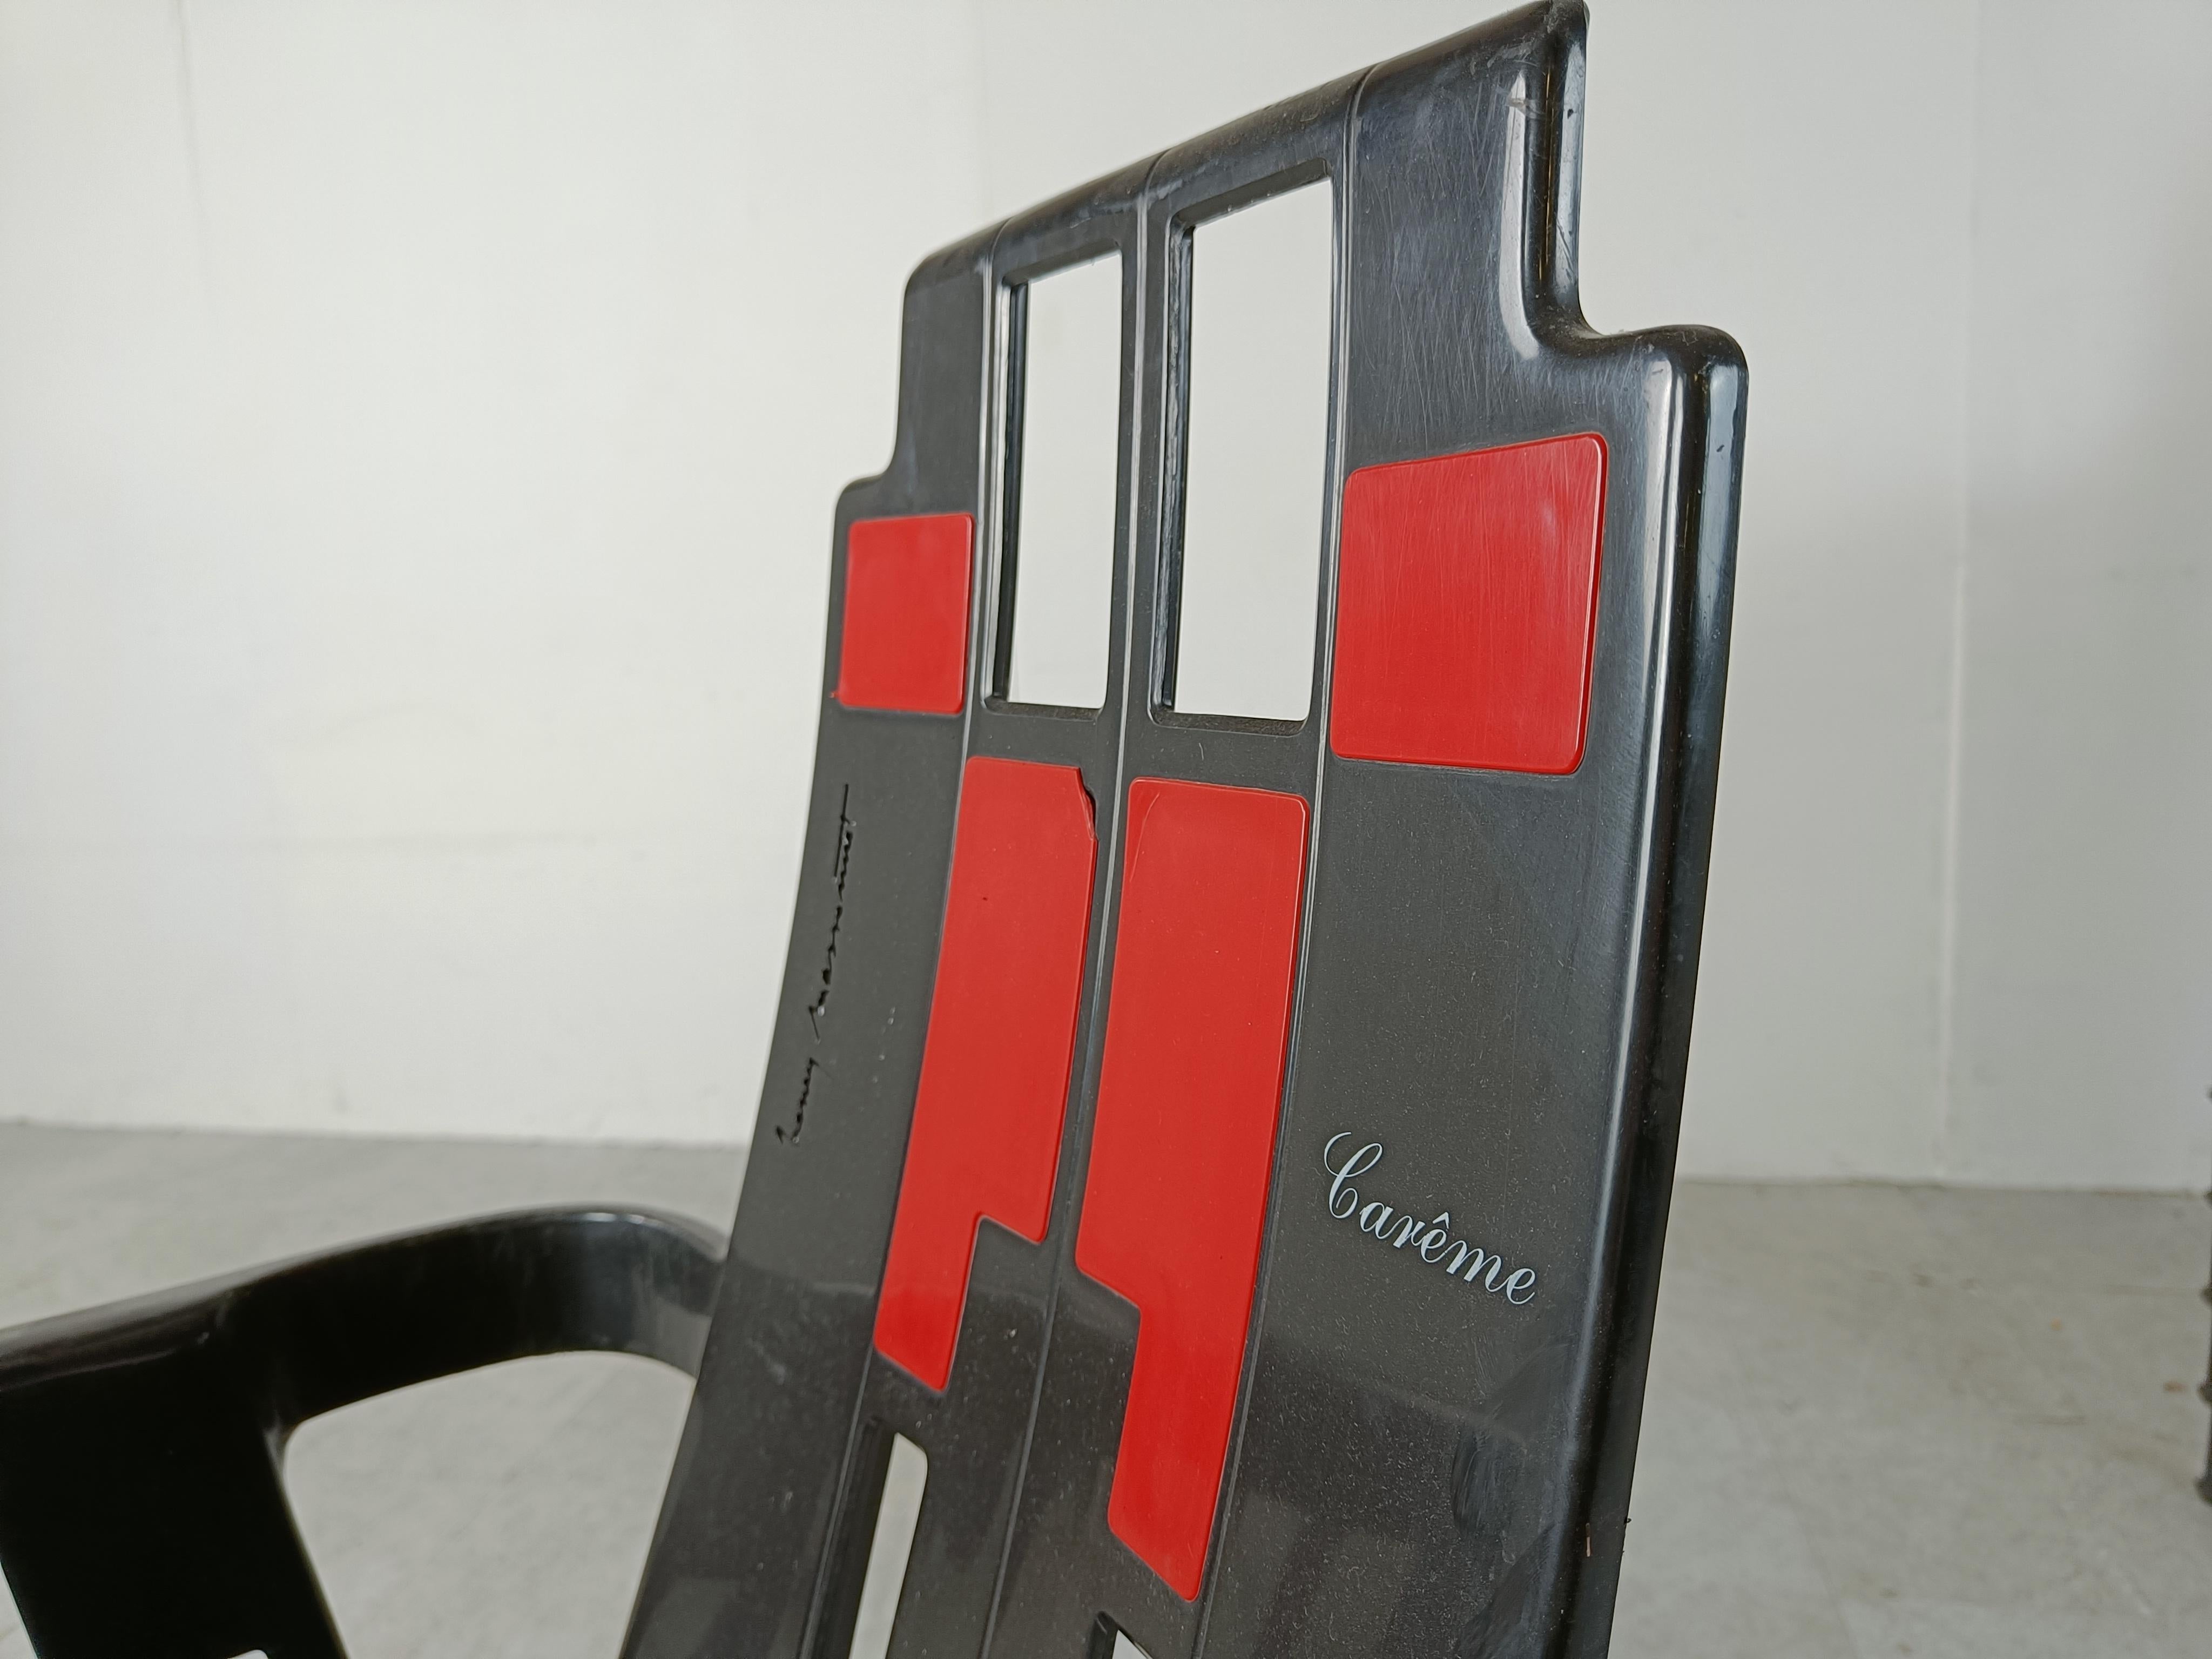 Ensemble de 6 chaises de salle à manger empilables Boston de Pierre Paulin inspirées par Piet Mondriaan et Charles Rennie Mackintosh.

Ces chaises de salle à manger peuvent être utilisées à l'intérieur et à l'extérieur et ont un design